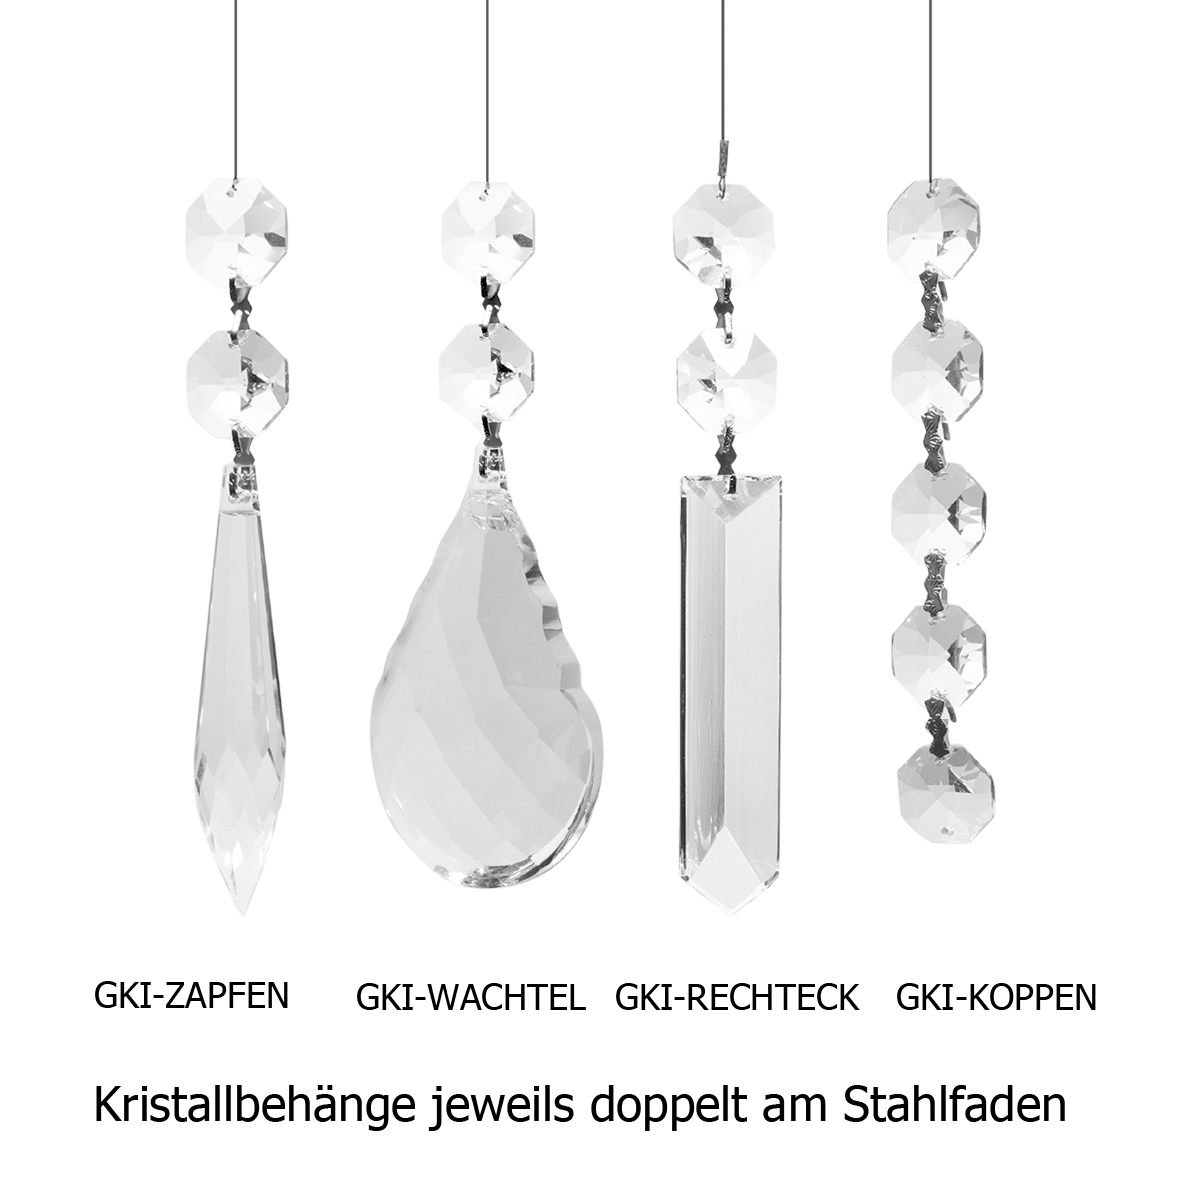 Kristallbehang 4 verschiedene Paare verbunden mit Edelstahl Fäden zum dekorieren  für Kronleuchter oder Balkenleuchten